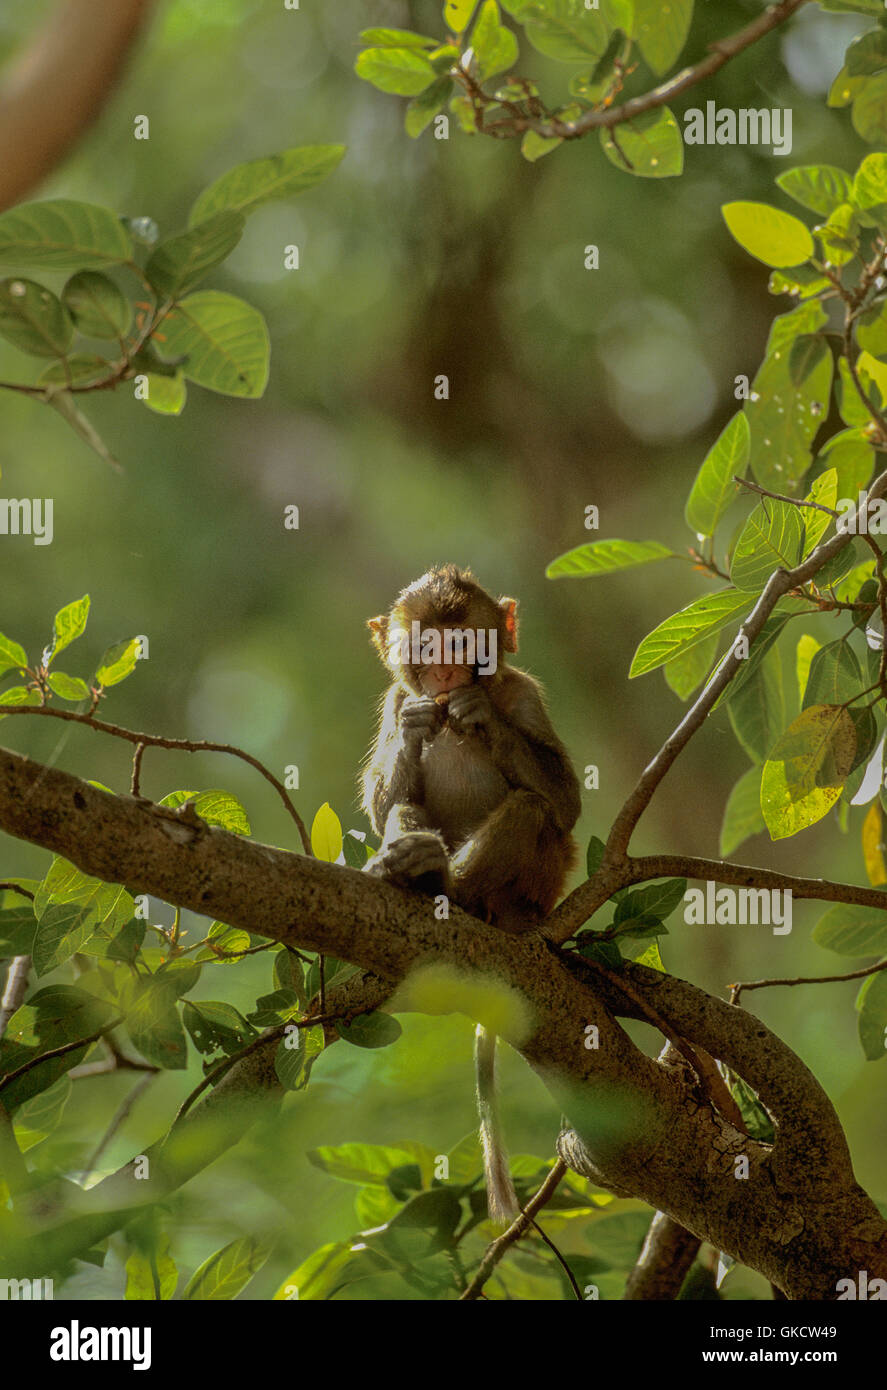 Macacos Rhesus, Macaca mulatta, bebé comer fruta en el árbol, Rajasthan, India Foto de stock